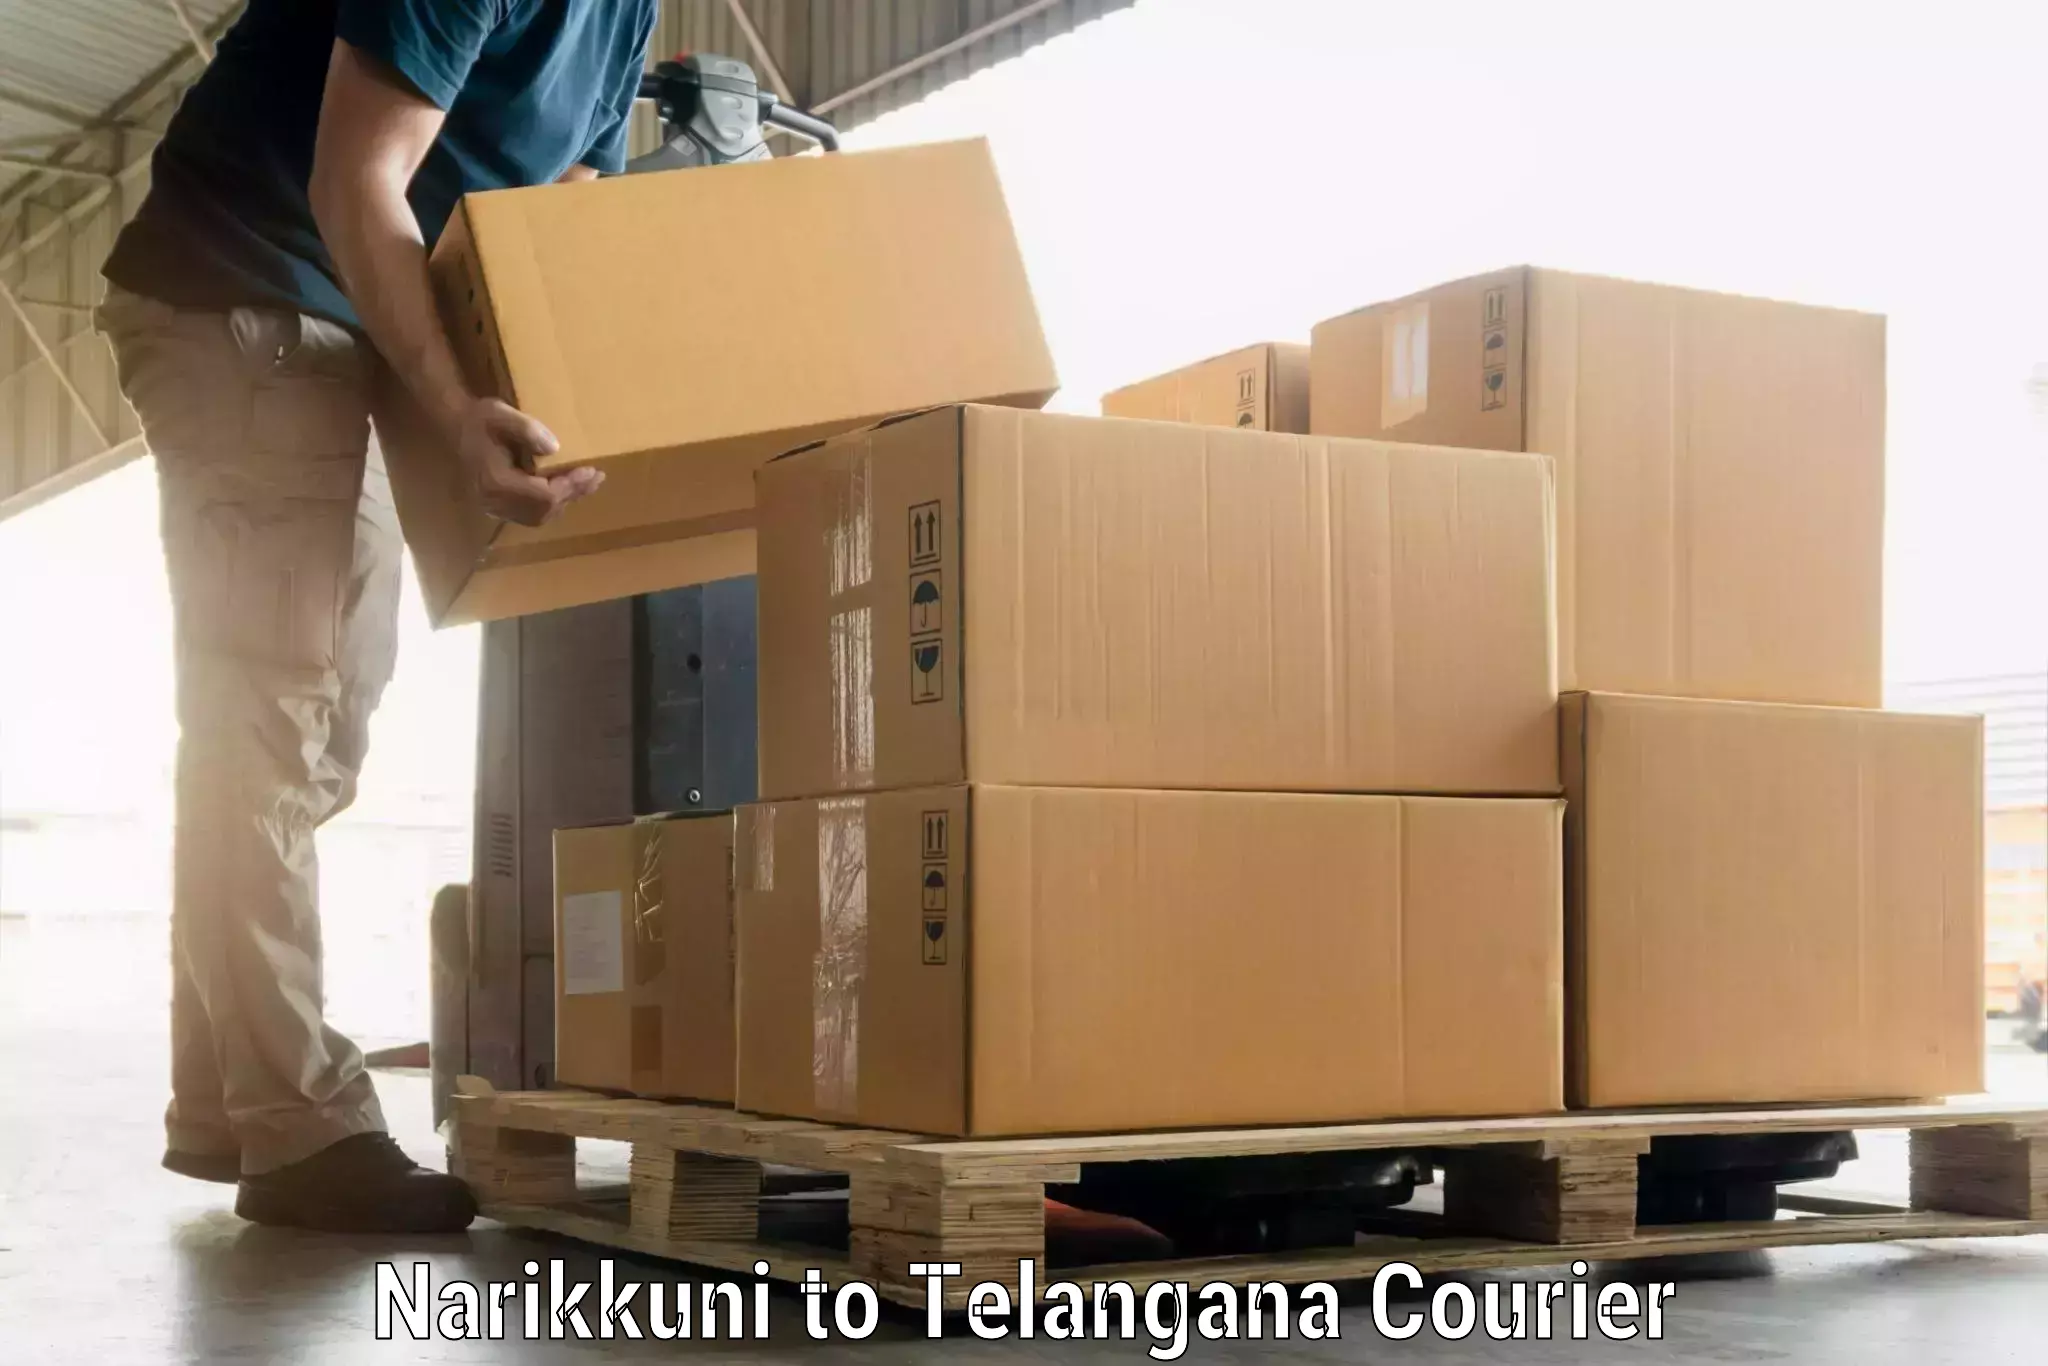 Door-to-door baggage service Narikkuni to Dornakal